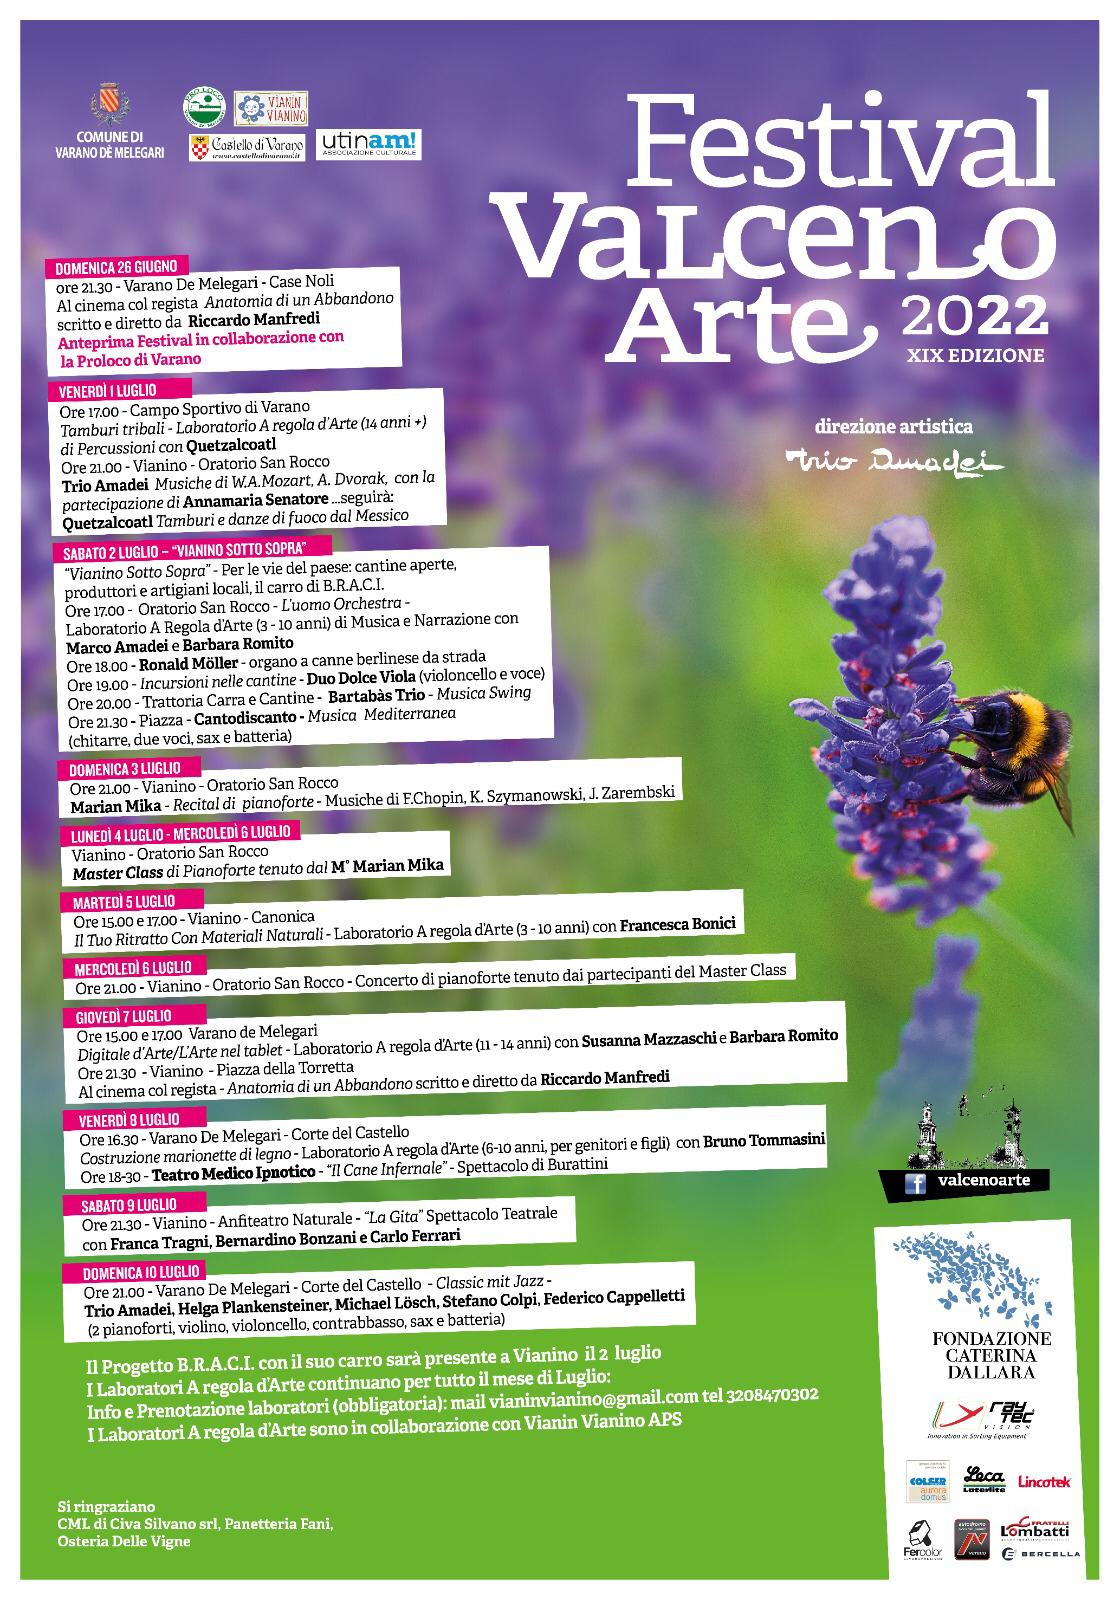 Festival Valceno Arte: Master Class di Pianoforte